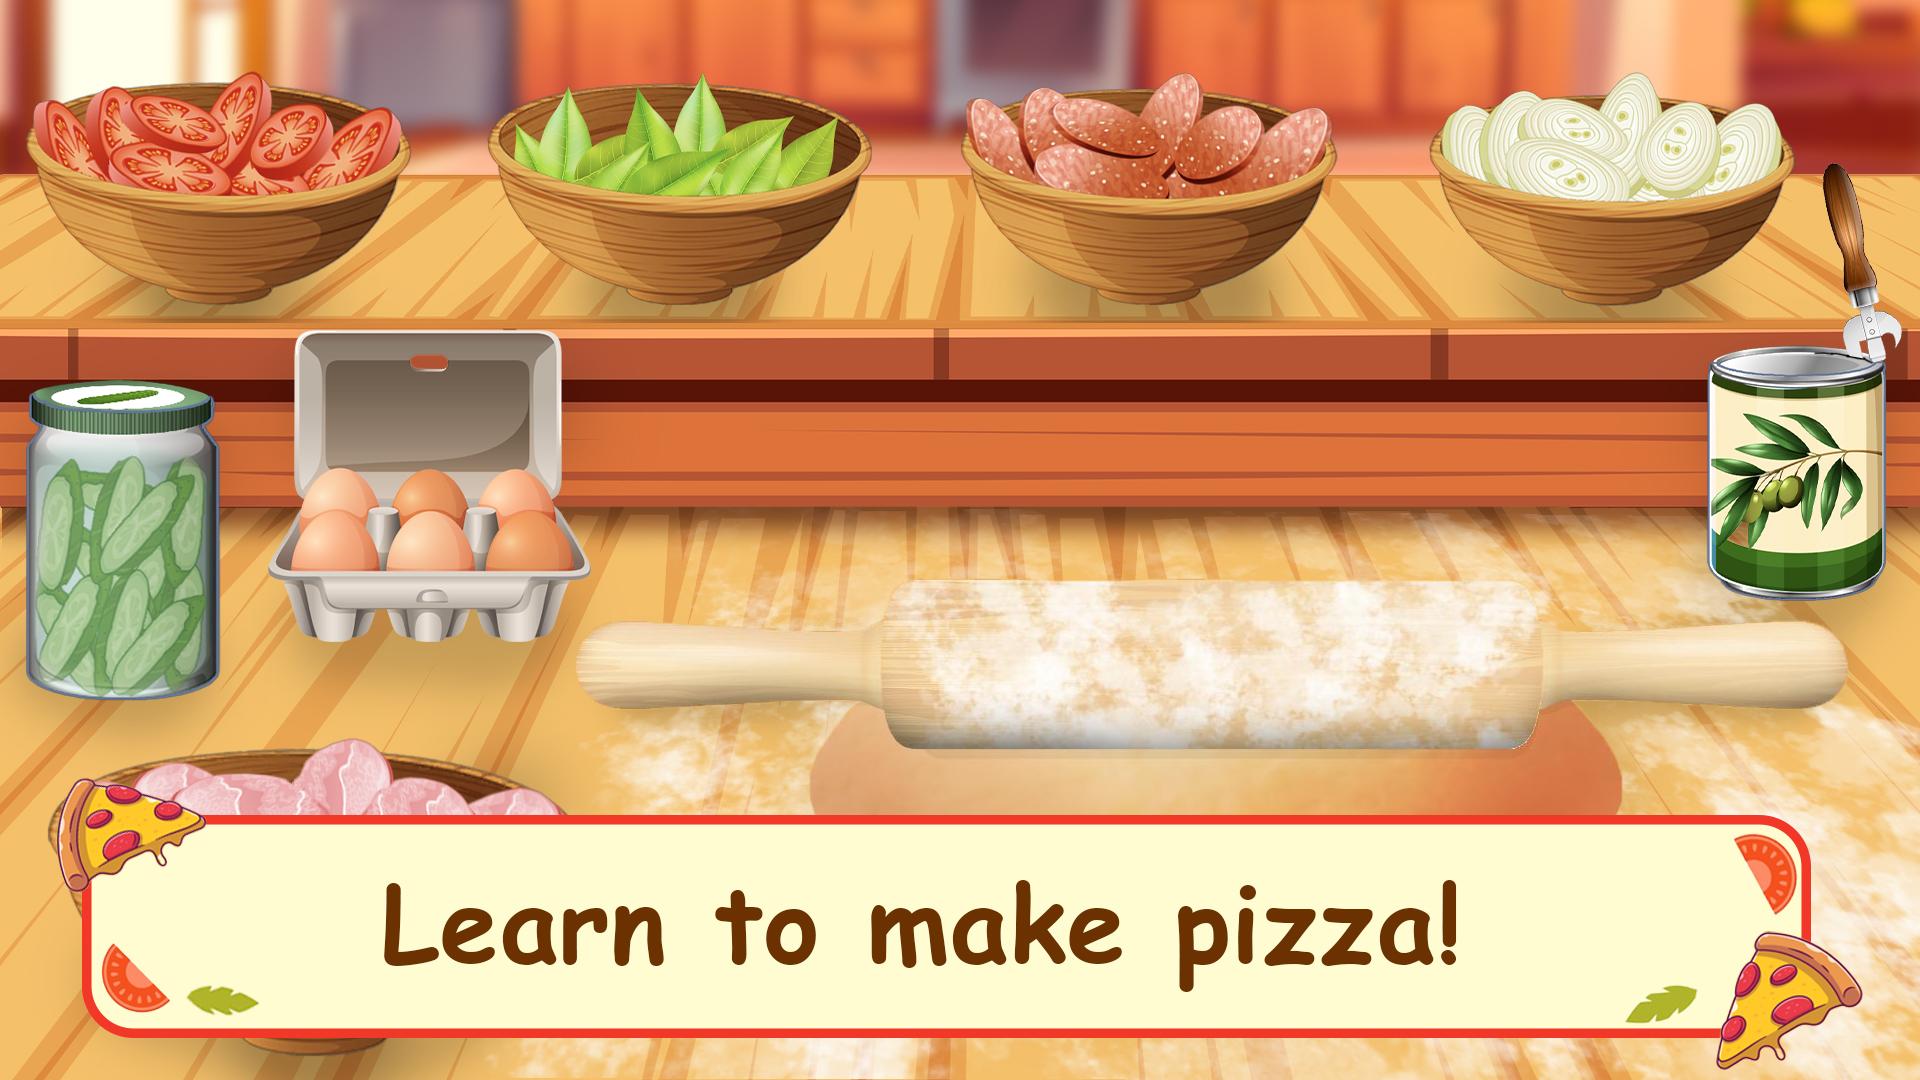 играть онлайн бесплатно готовить пиццу играть онлайн бесплатно фото 30